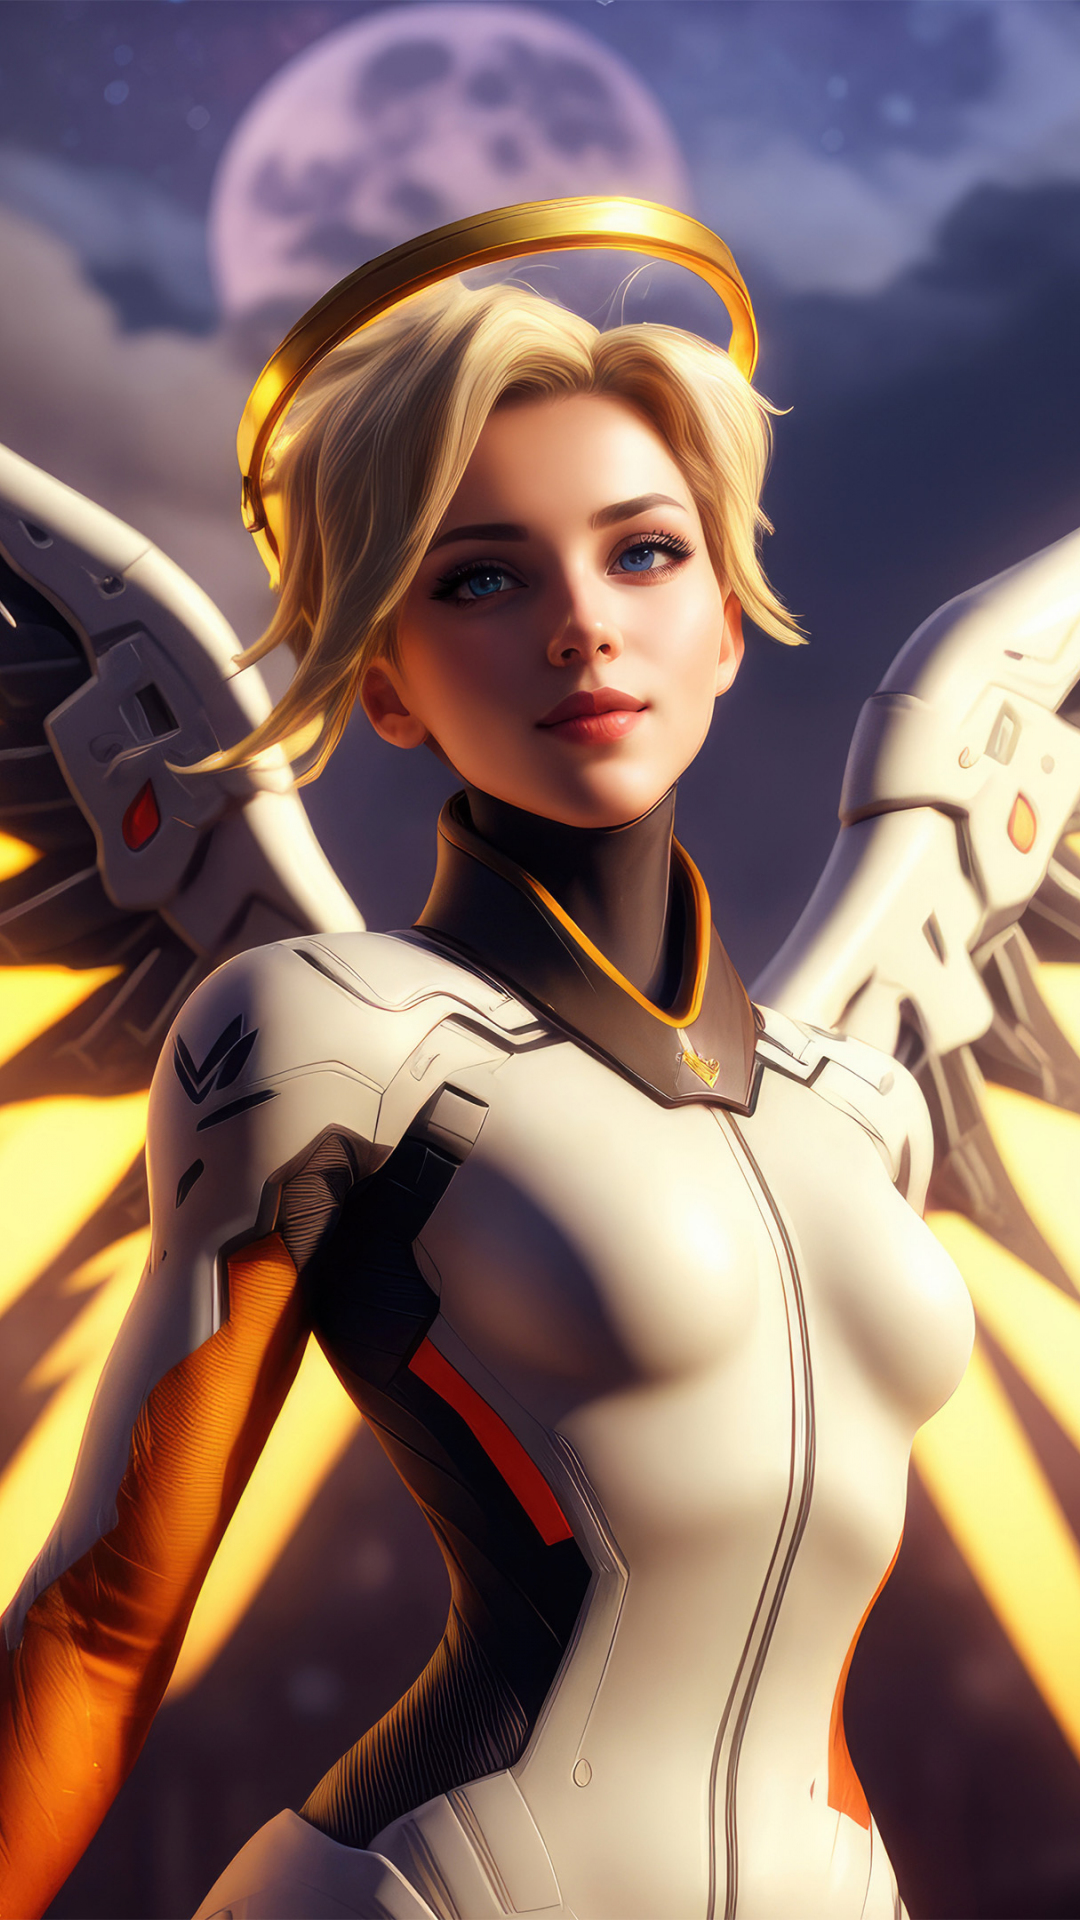 Mercy of Overwatch, The Swiss Angel, golden wings, 1080x1920 wallpaper